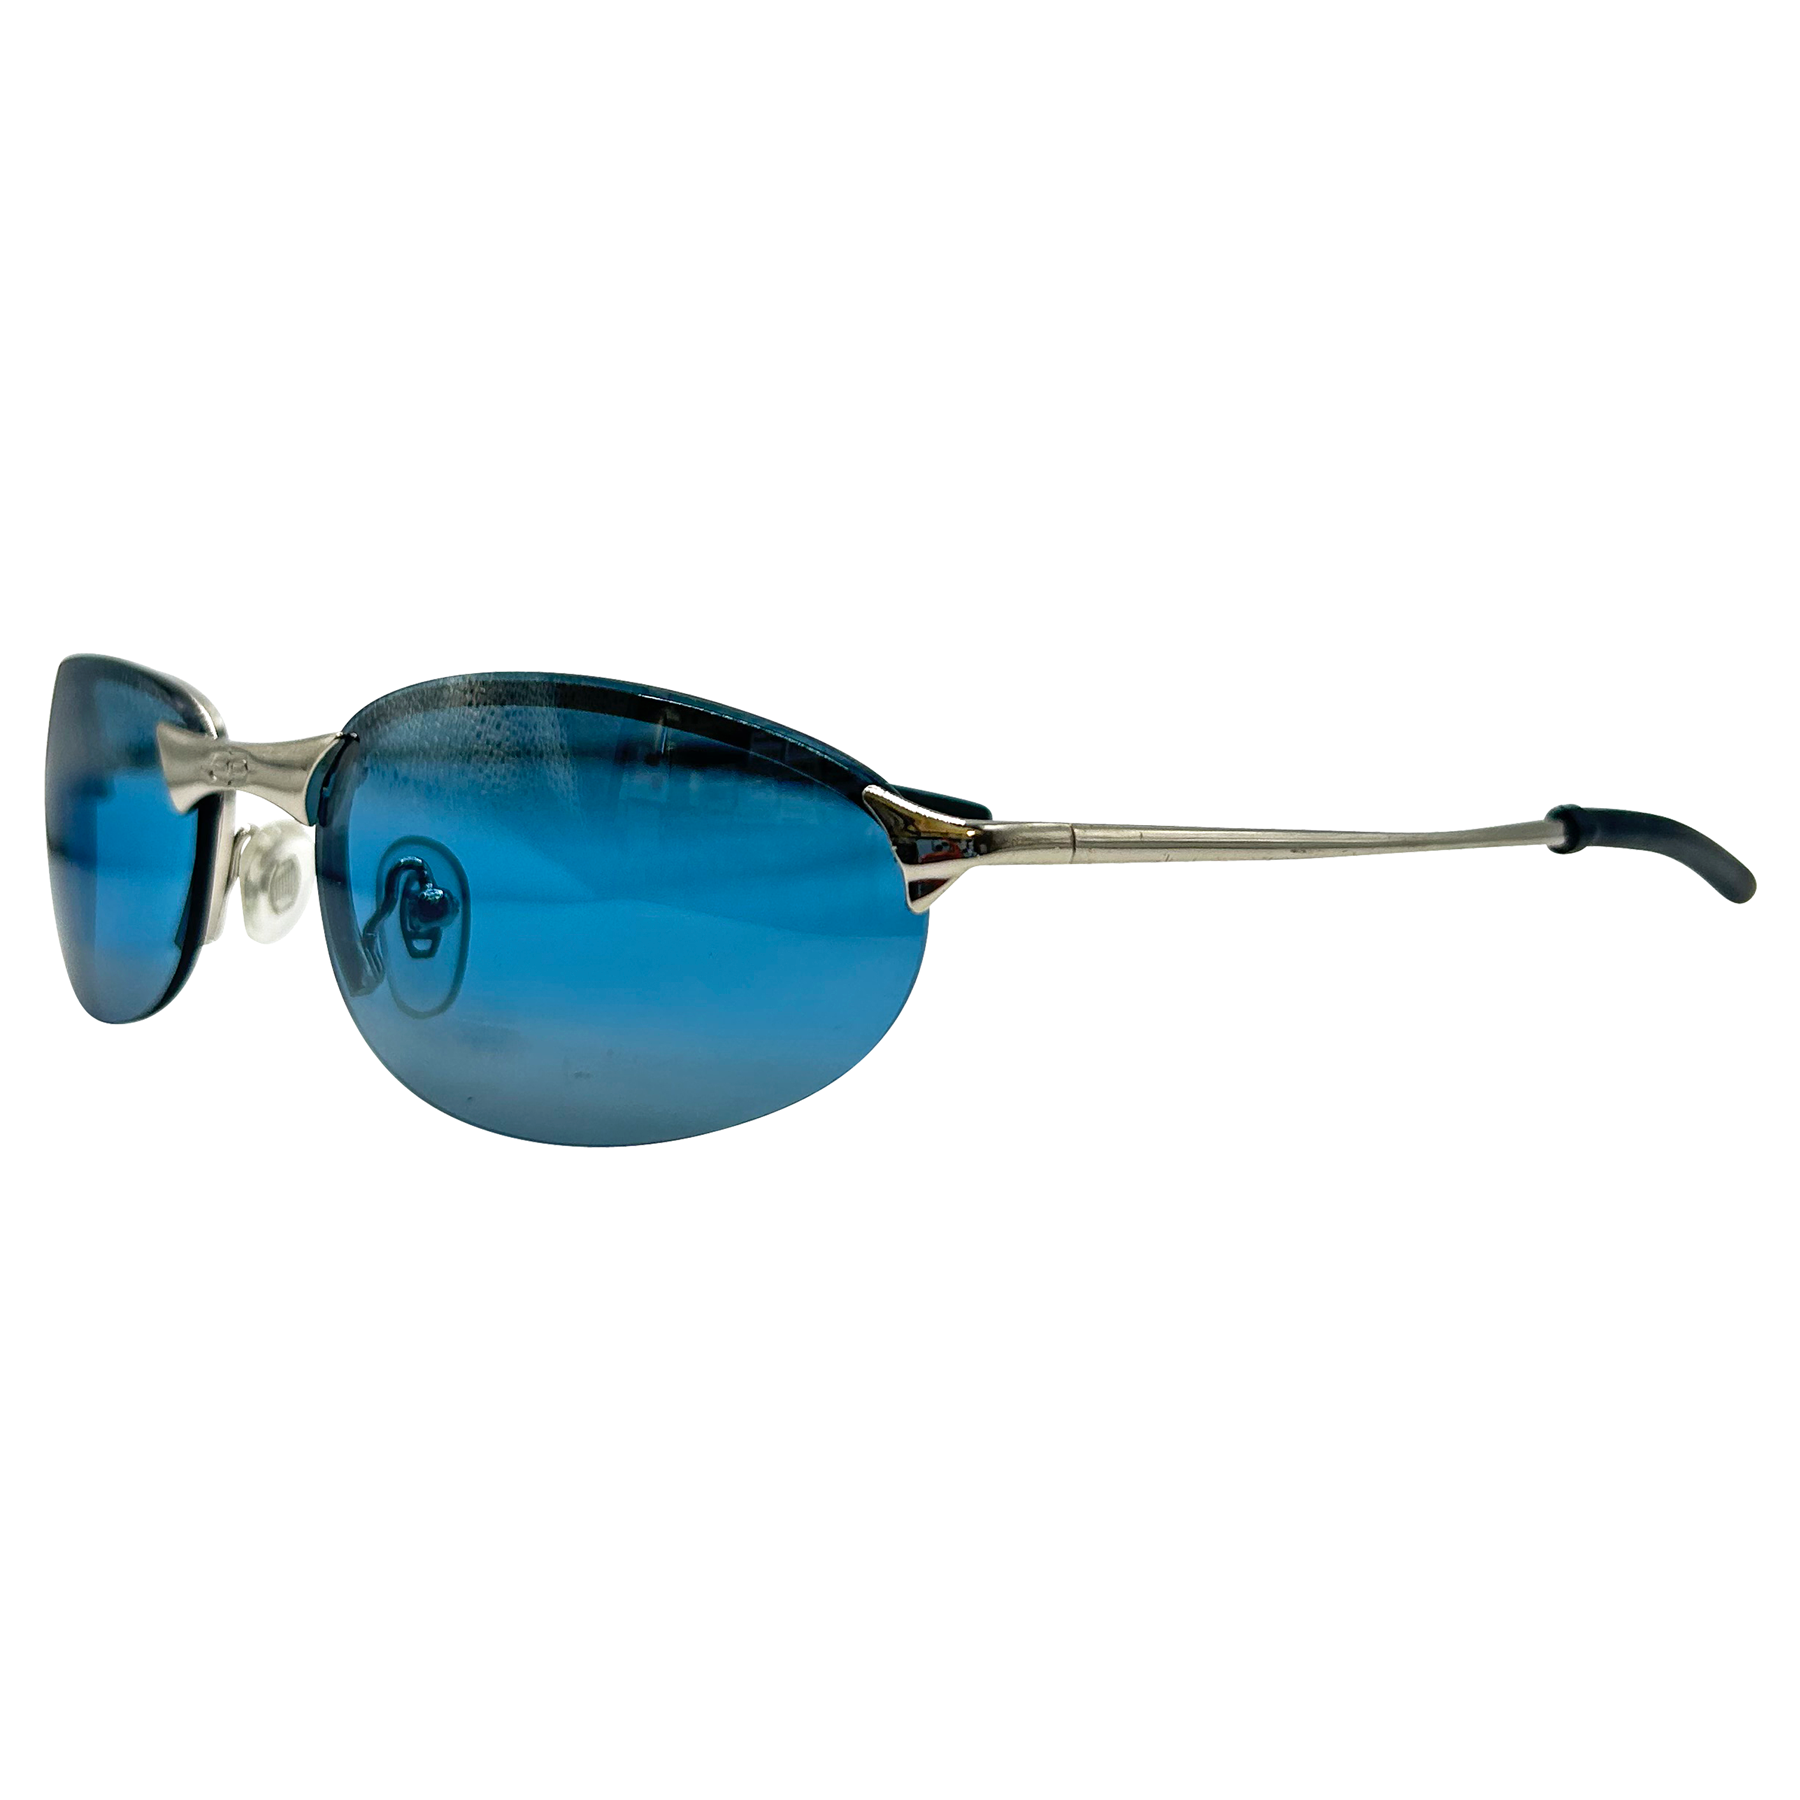 PENALTY Trending 90s Sport Sunglasses